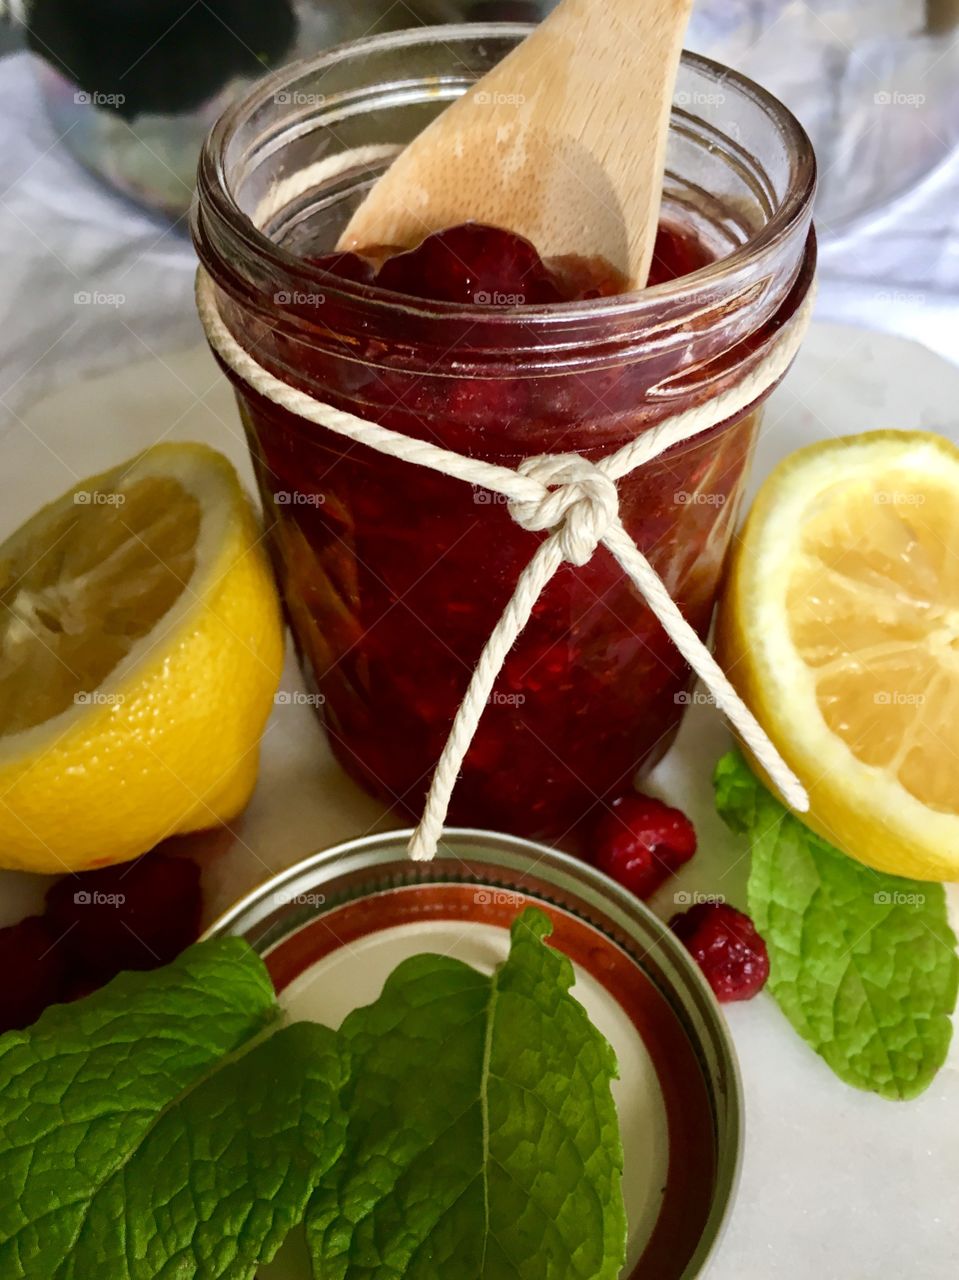 Close-up of jam near lemon